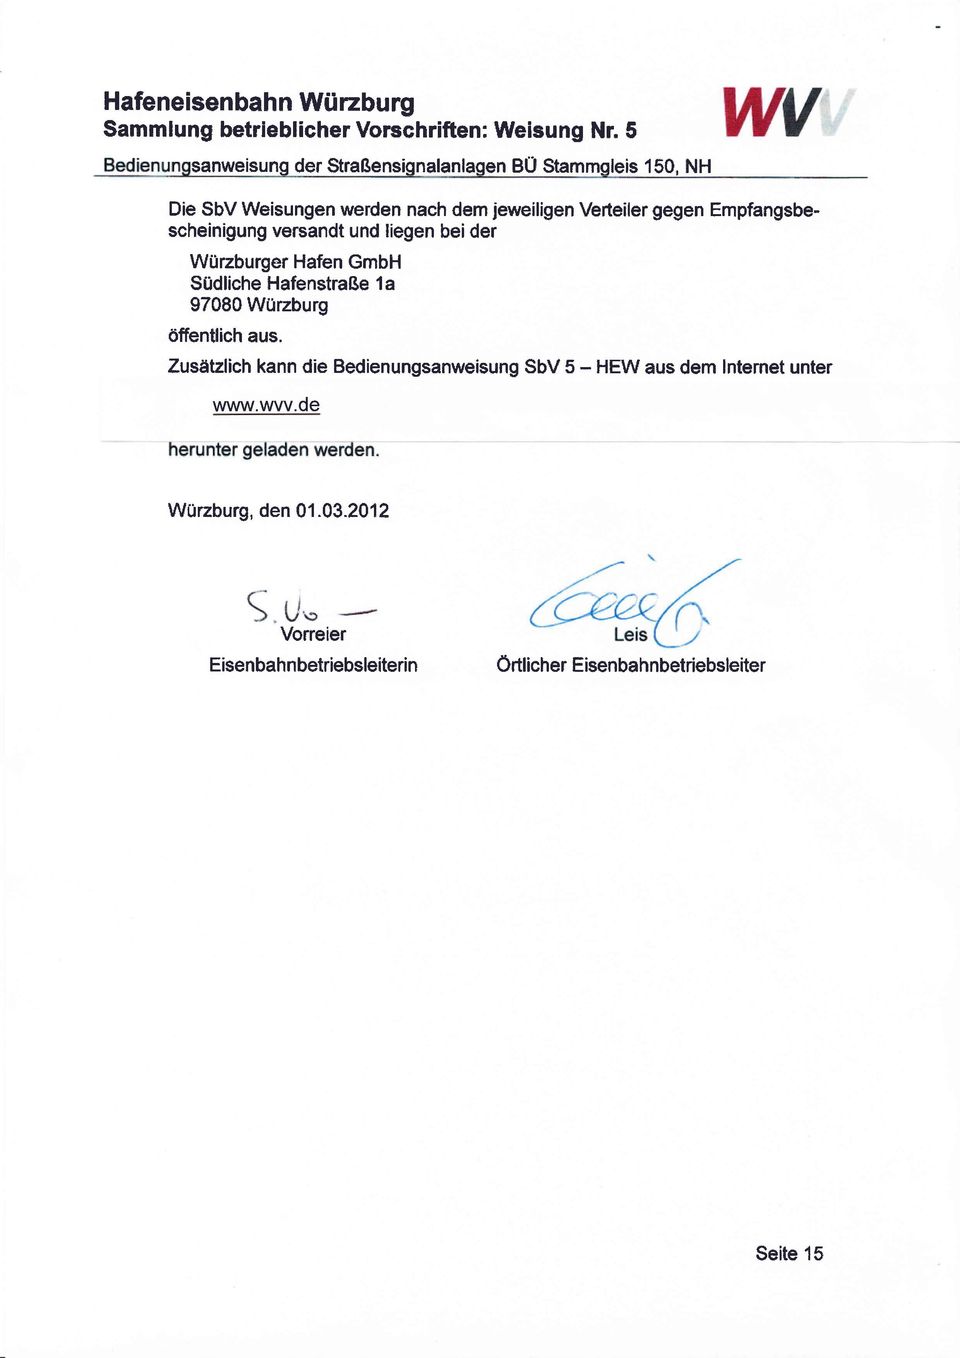 Empfangsbescheinigung versandt und liegen beider Wilzburger Hafen GmbH Südliche Hafenstraße 1 a 97080 Wtlzburg riffentlich aus.